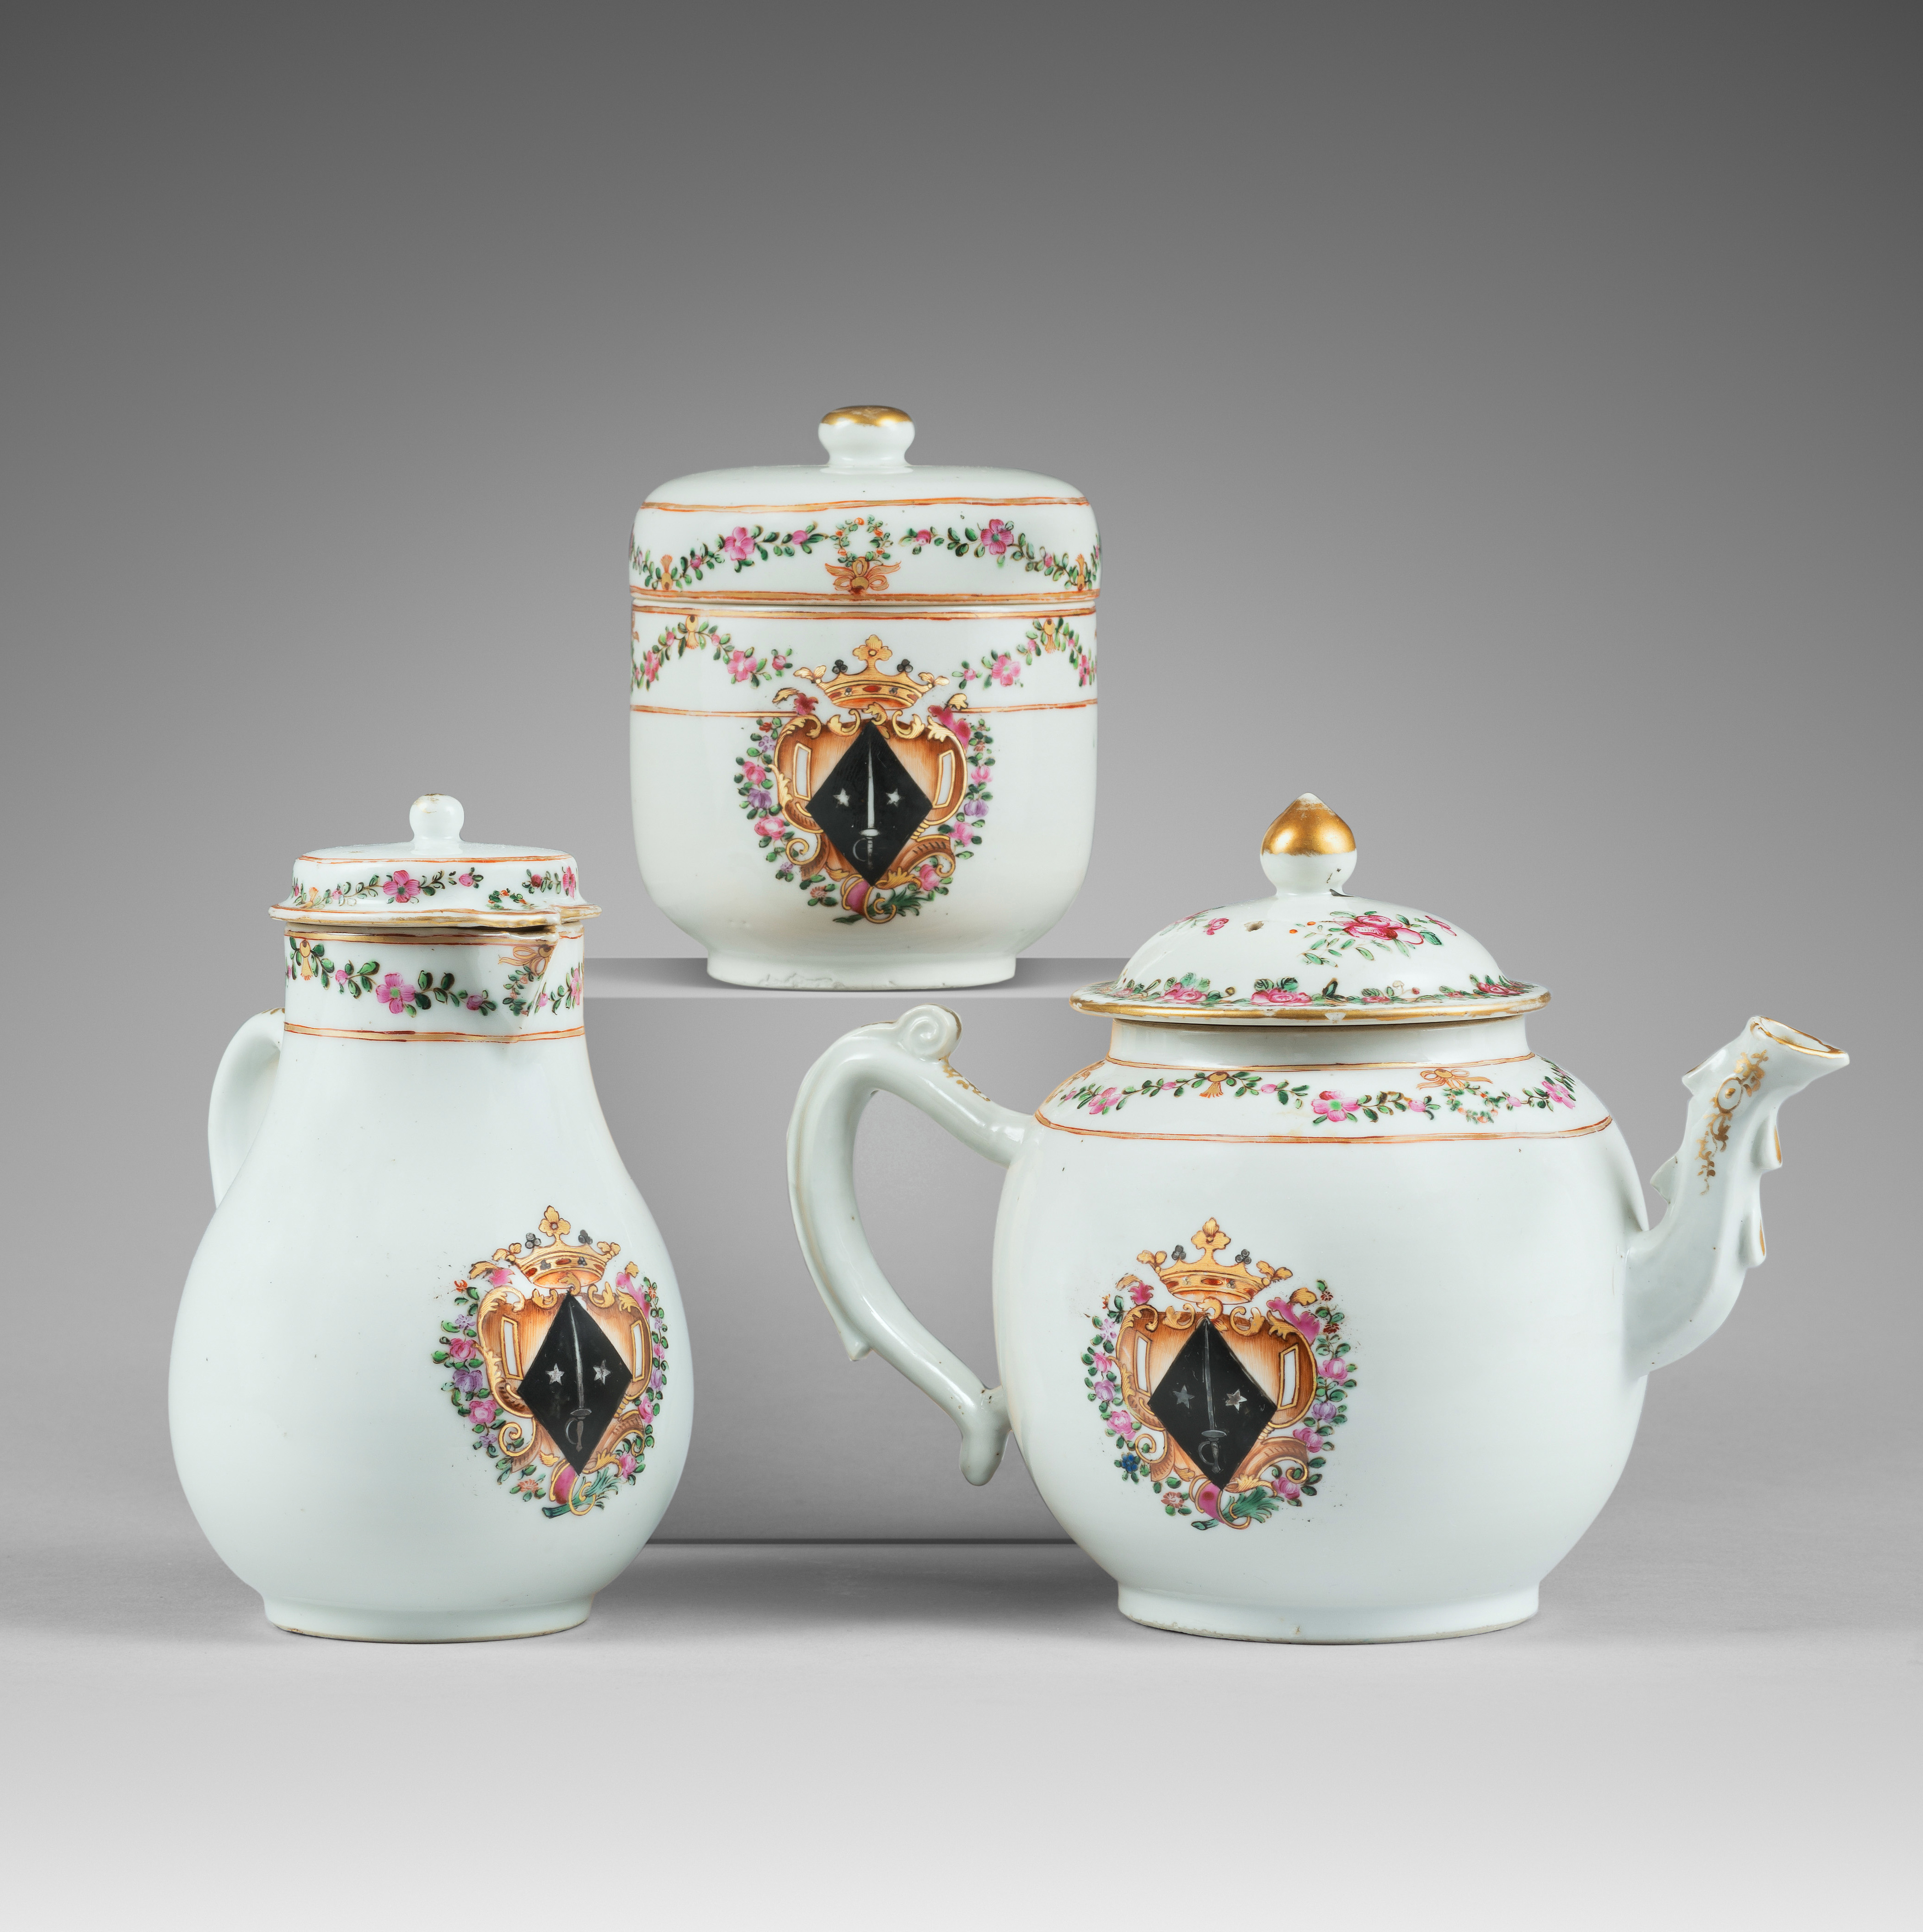 Porcelaine Qianlong (1736-1795), vers 1765, Chine